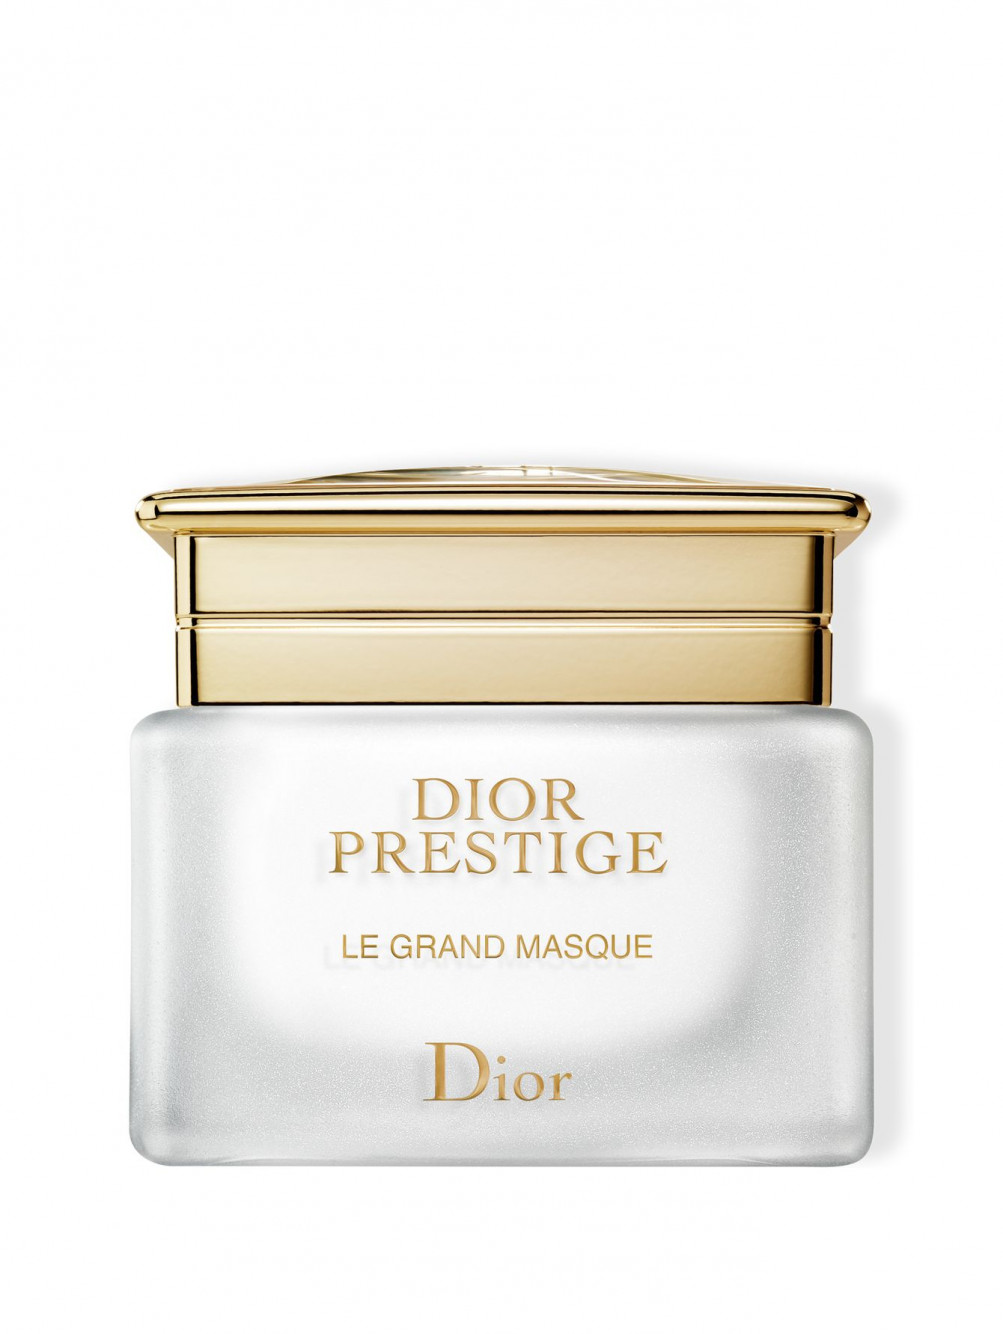 Dior Prestige Интенсивная маска для лица, насыщенная кислородом 50 мл - Общий вид